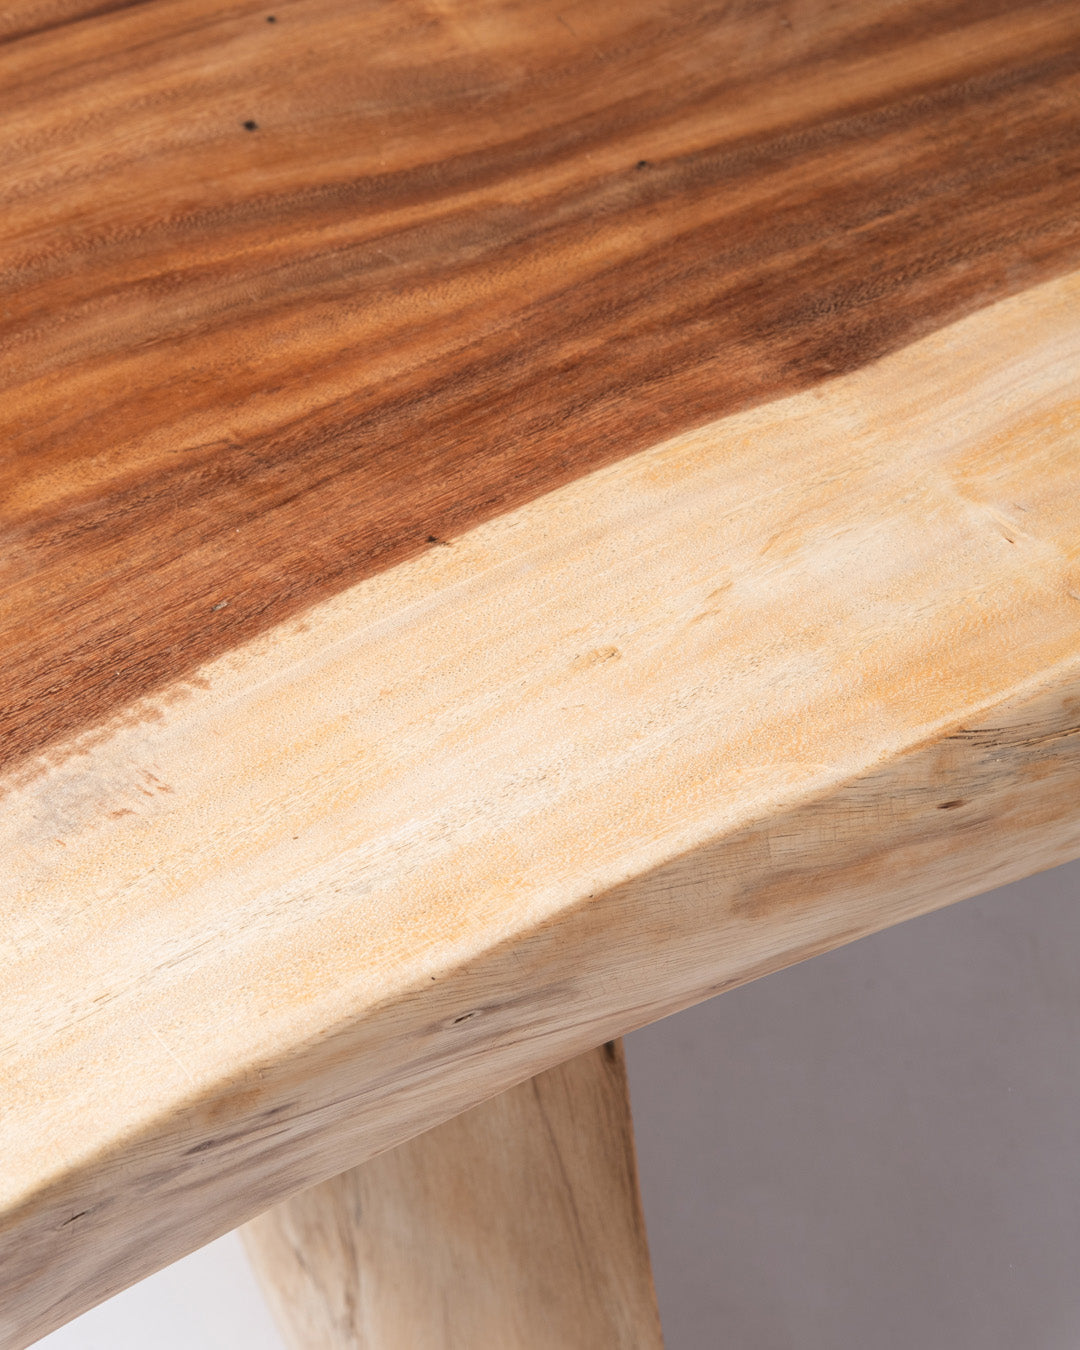 Mesa de comedor de madera maciza natural de Samán Malino rectangular, hecha a mano en una sola pieza con acabado natural, consultar medidas disponibles, origen Indonesia